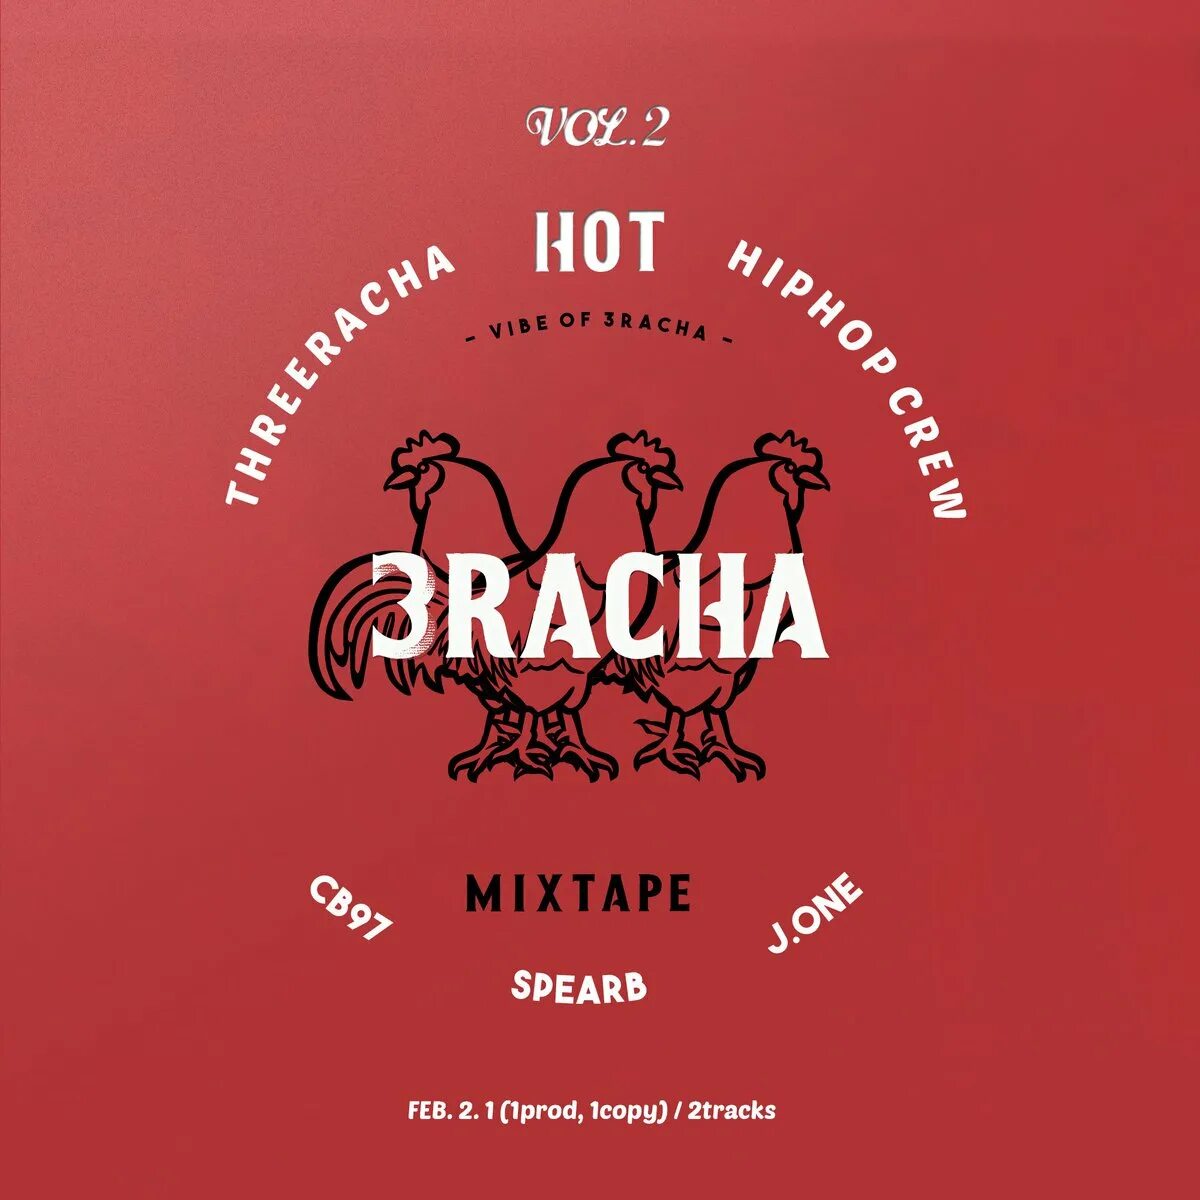 Альбом песен марты. Cb97 3racha. 3racha обложки альбомов. 42 3racha обложка. 3racha эмблема.